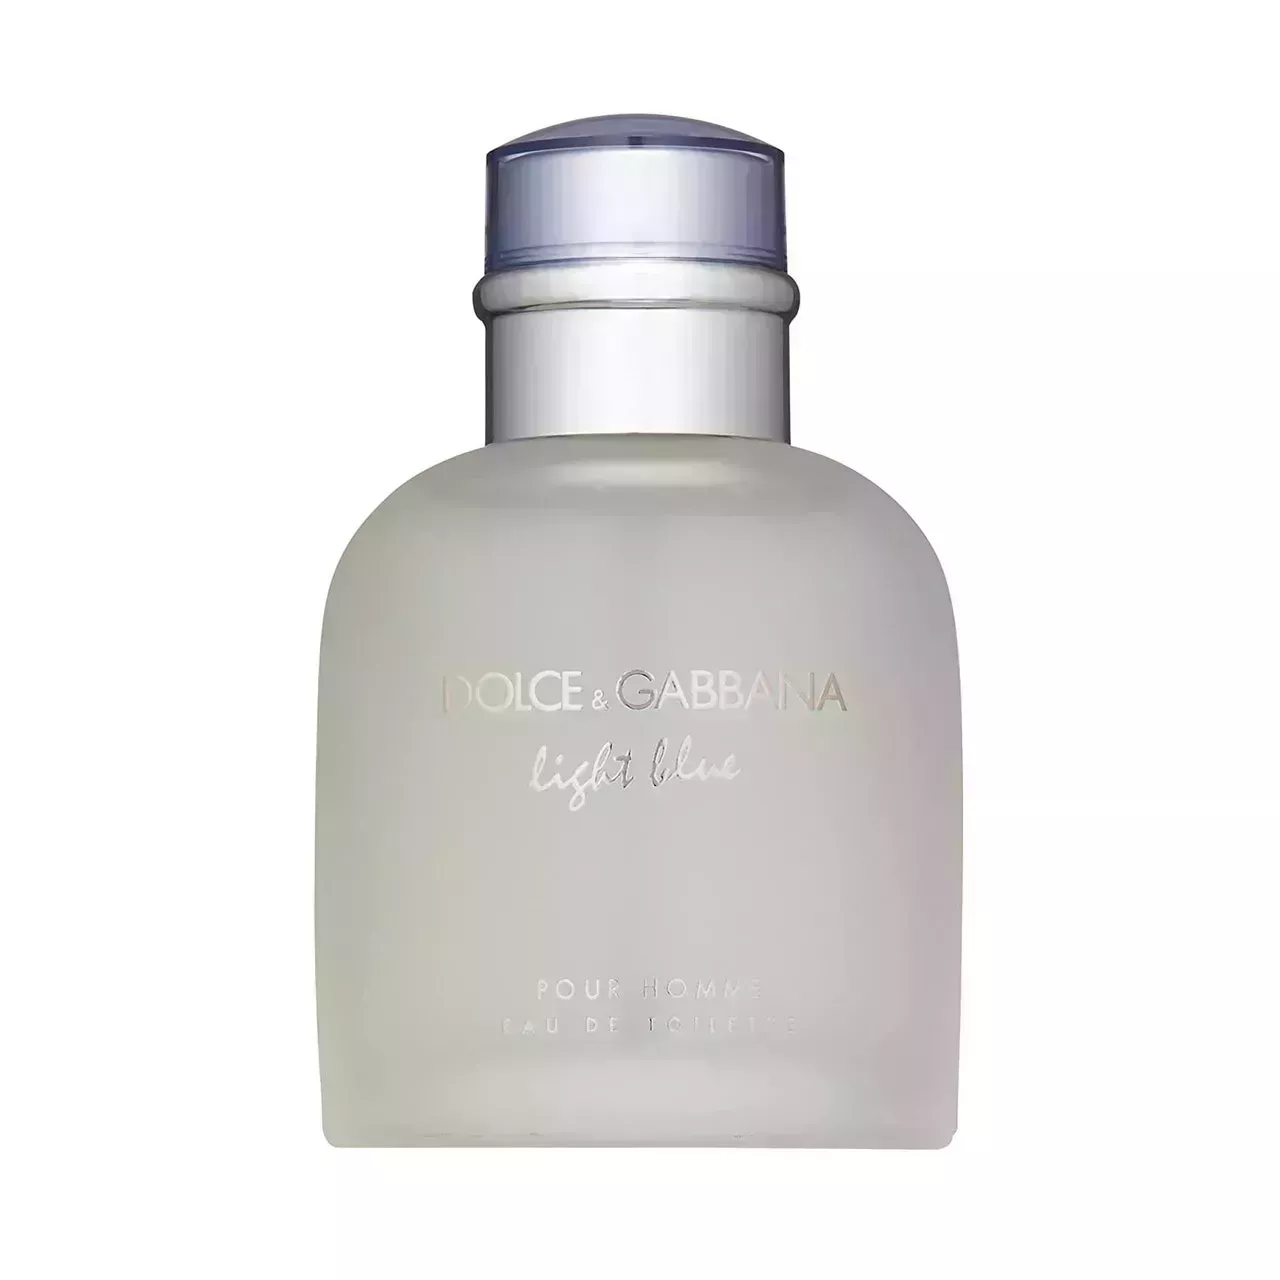 Dolce & Gabbana Light Blue For Men Eau De Toilette Spray on white background